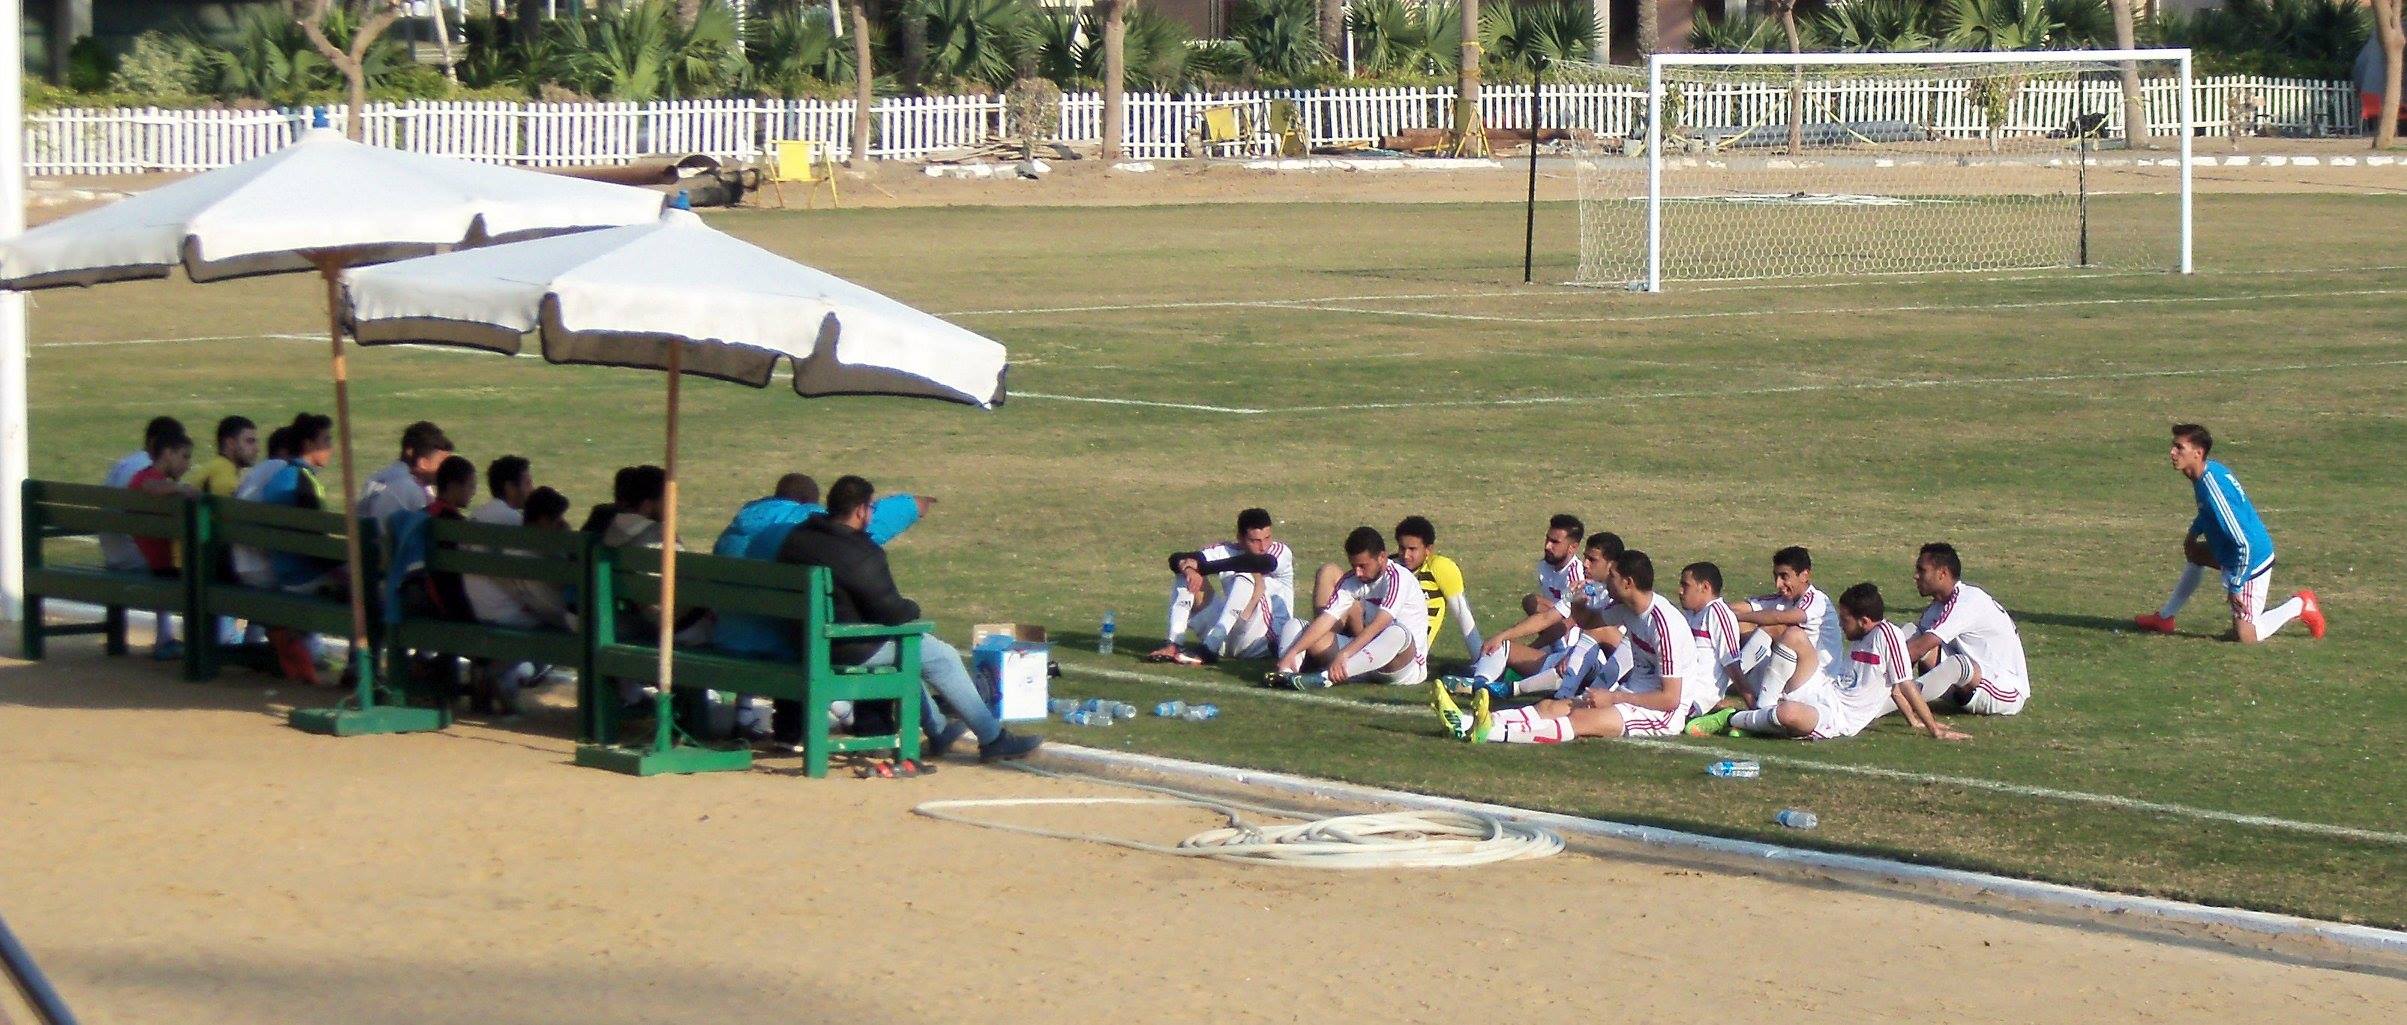 aswan team footbal in acadmy